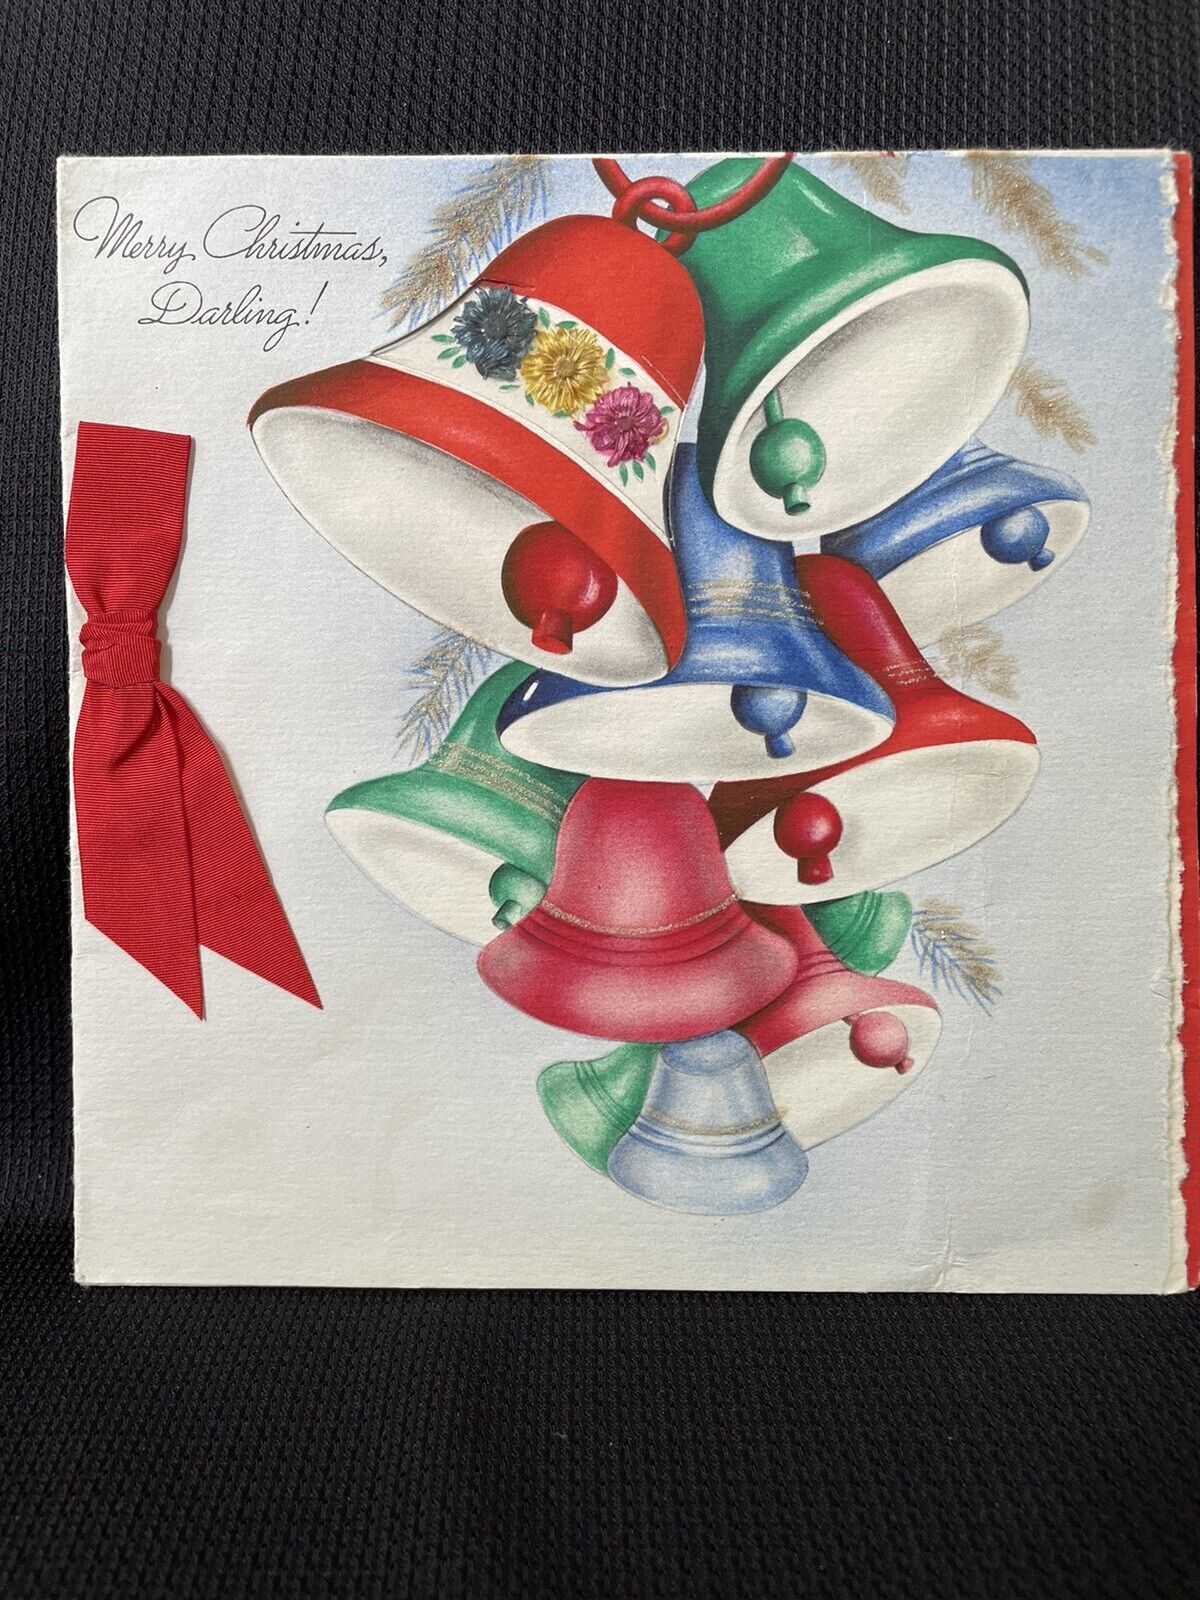 Vintage Hallmark Christmas Card Hall Brothers Inc. Merry Christmas, Darling 1943